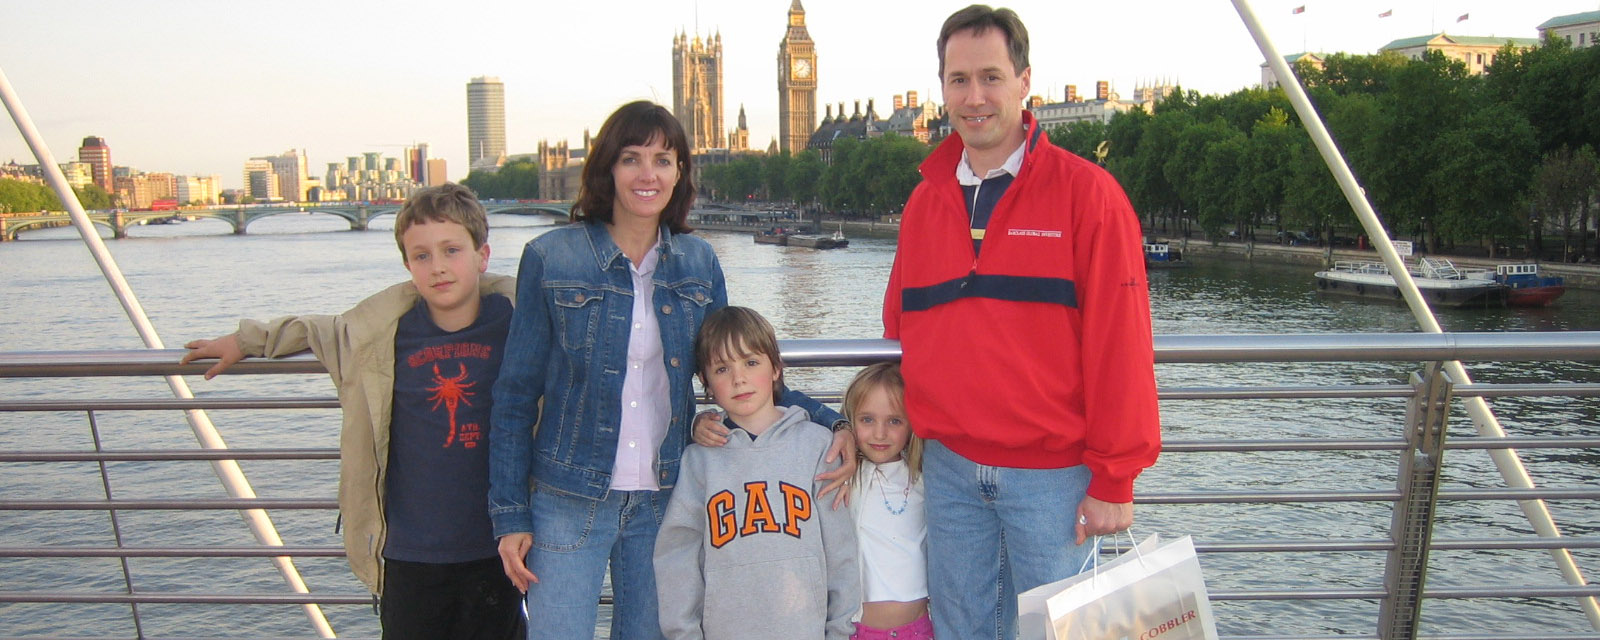 Family in London